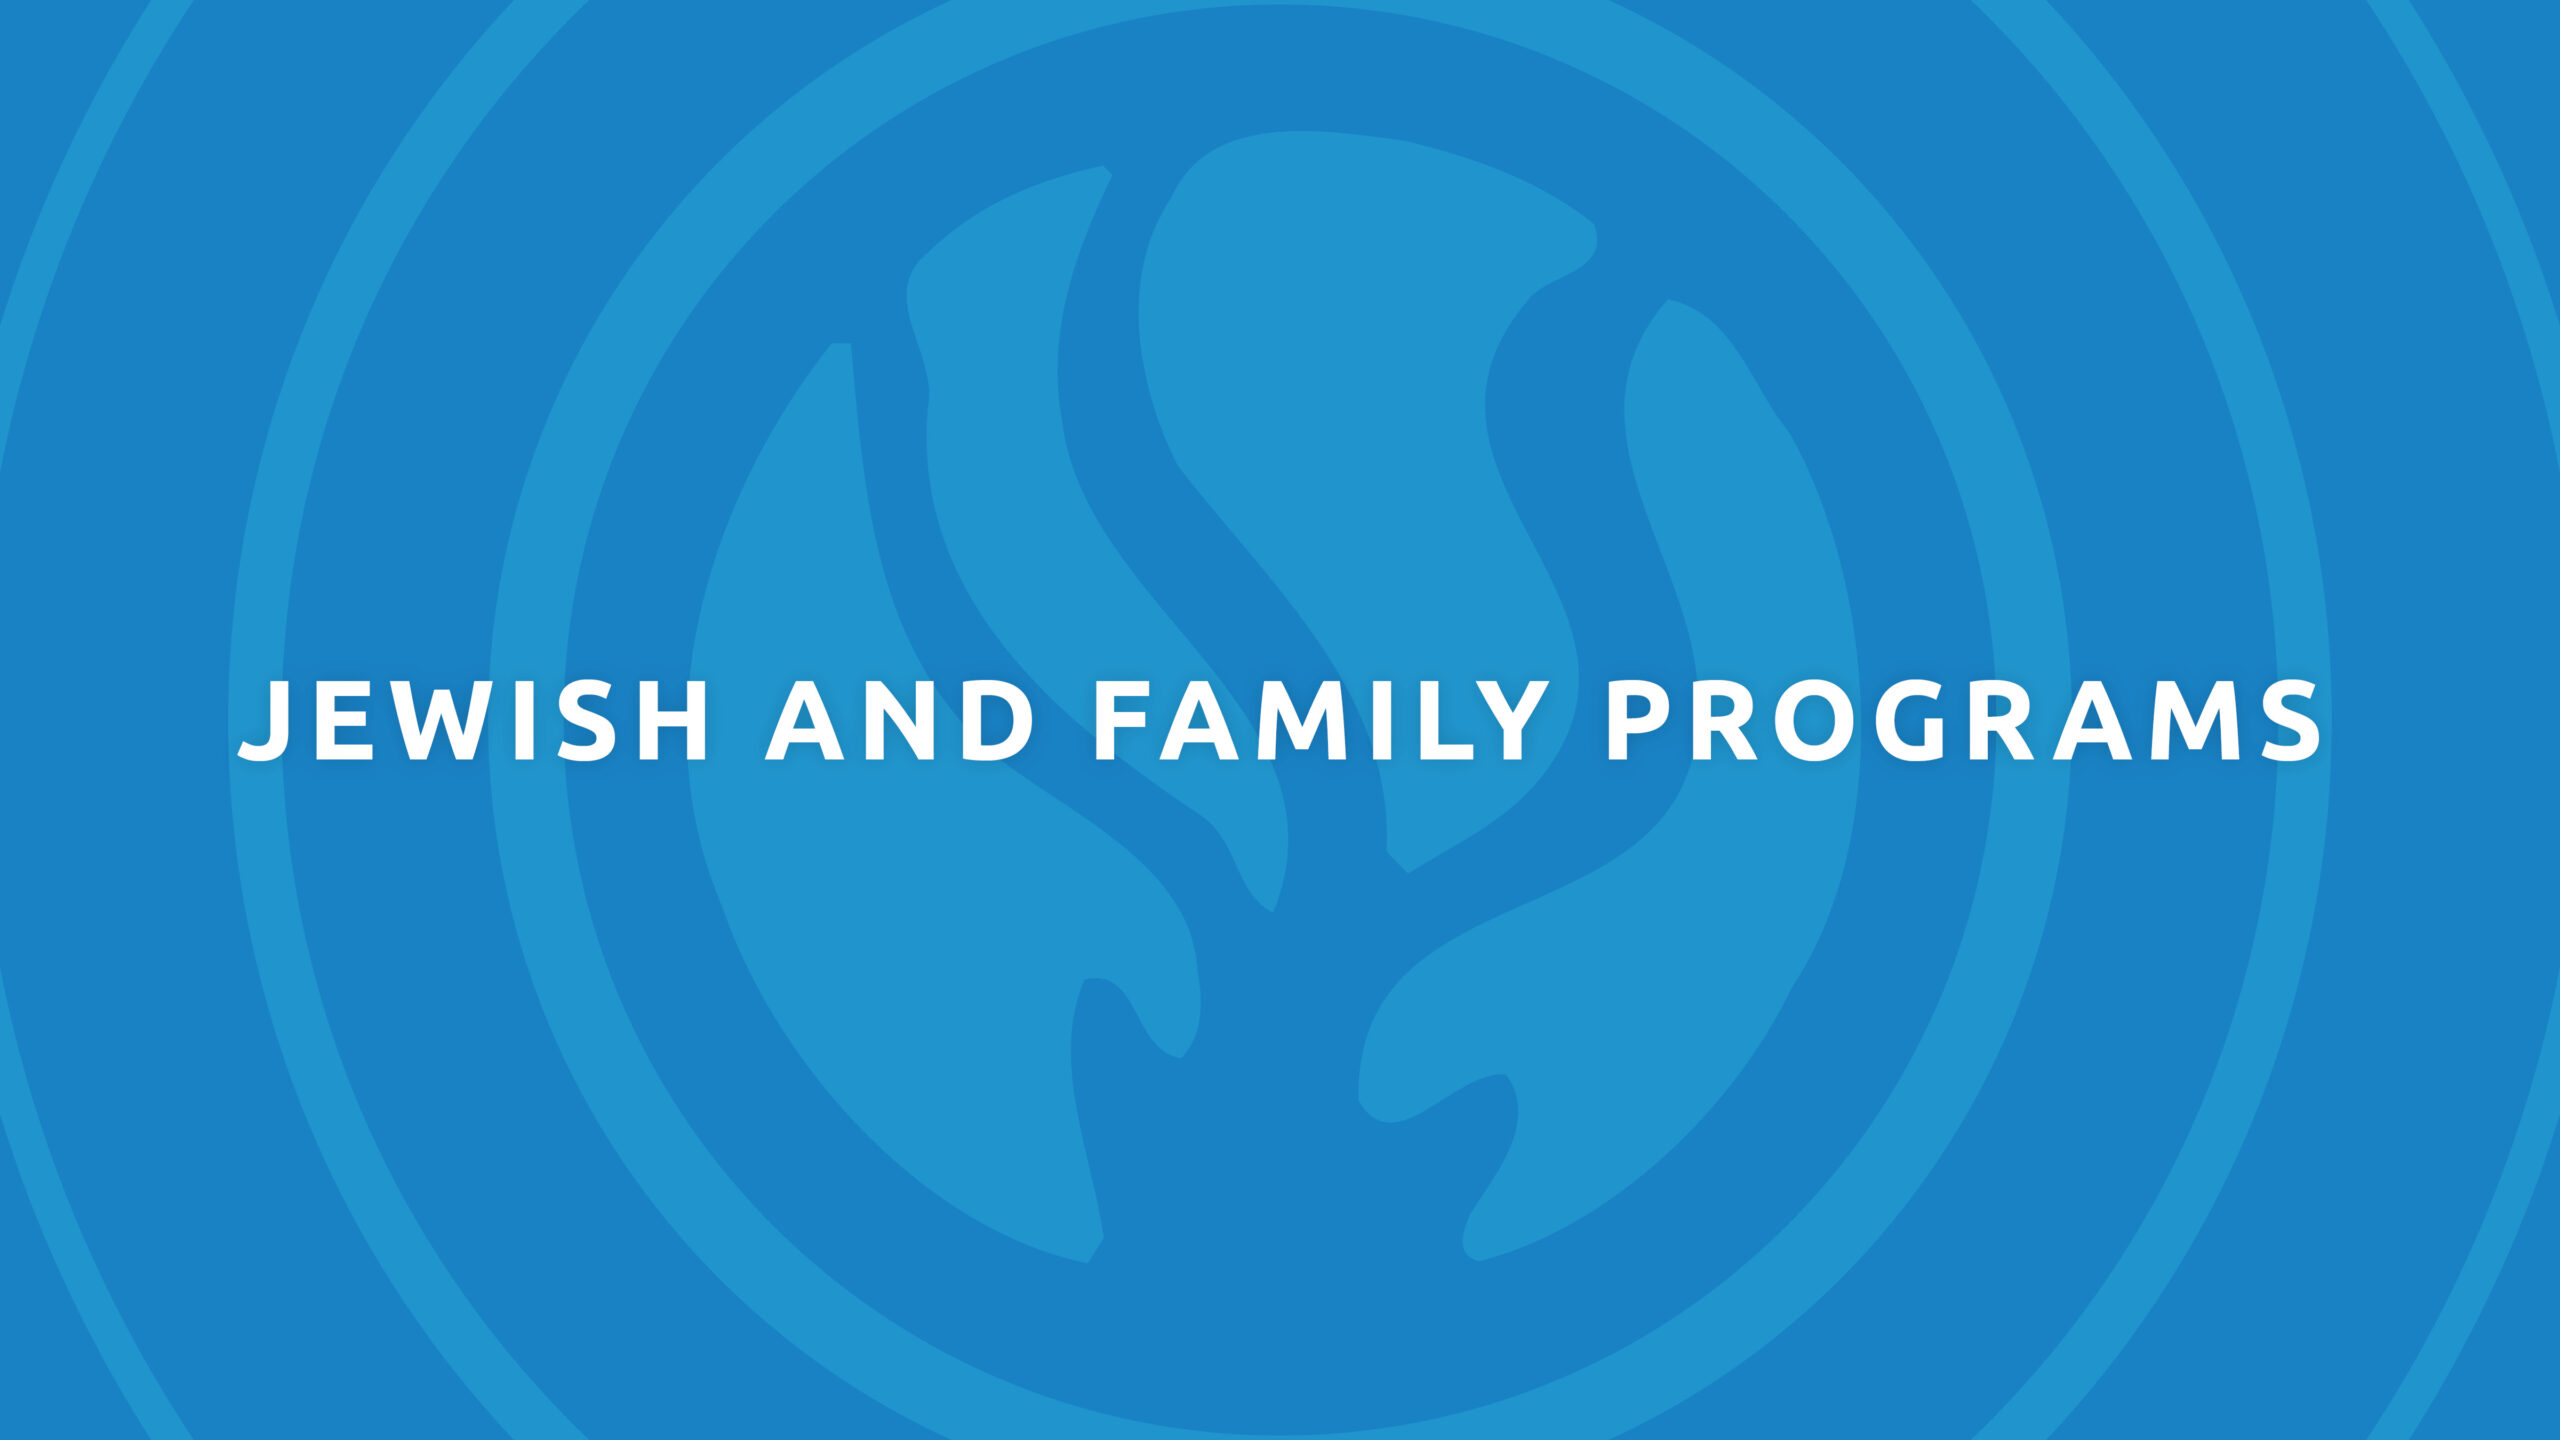 Jewish and family programs logo.